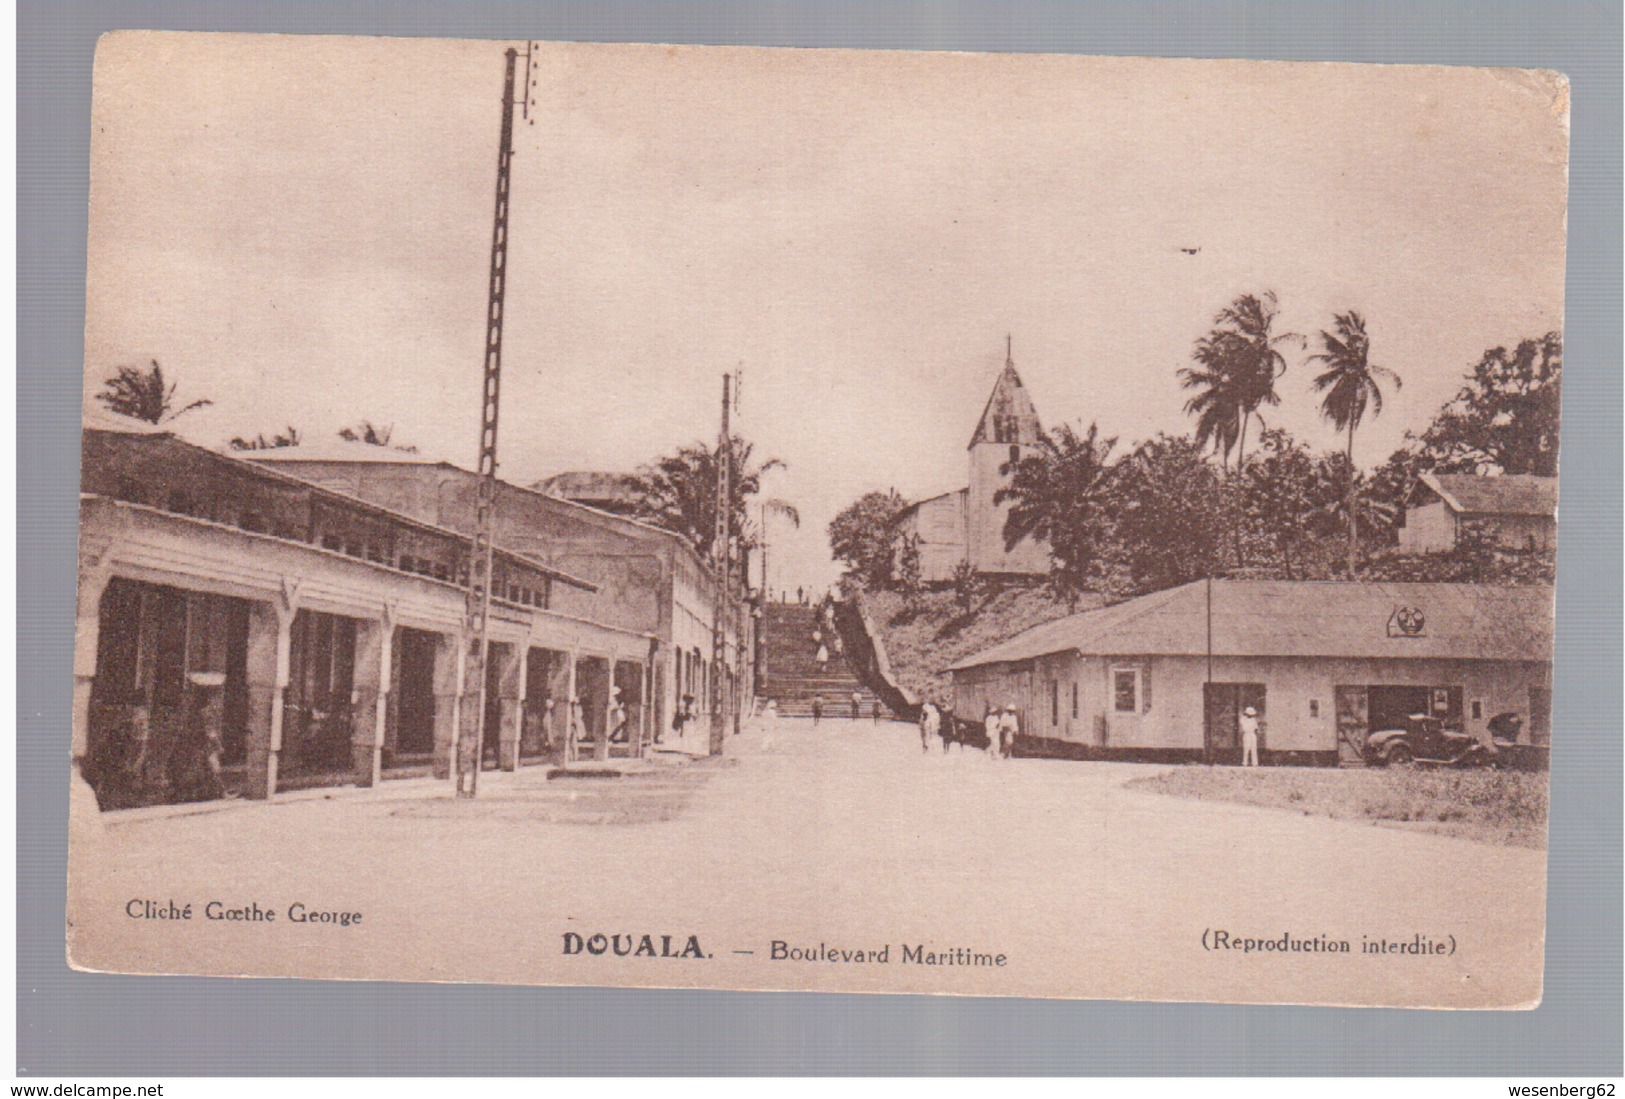 CAMEROUN Kamerun Douala - Boulevard Maritime Ca 1920 OLD POSTCARD - Cameroun